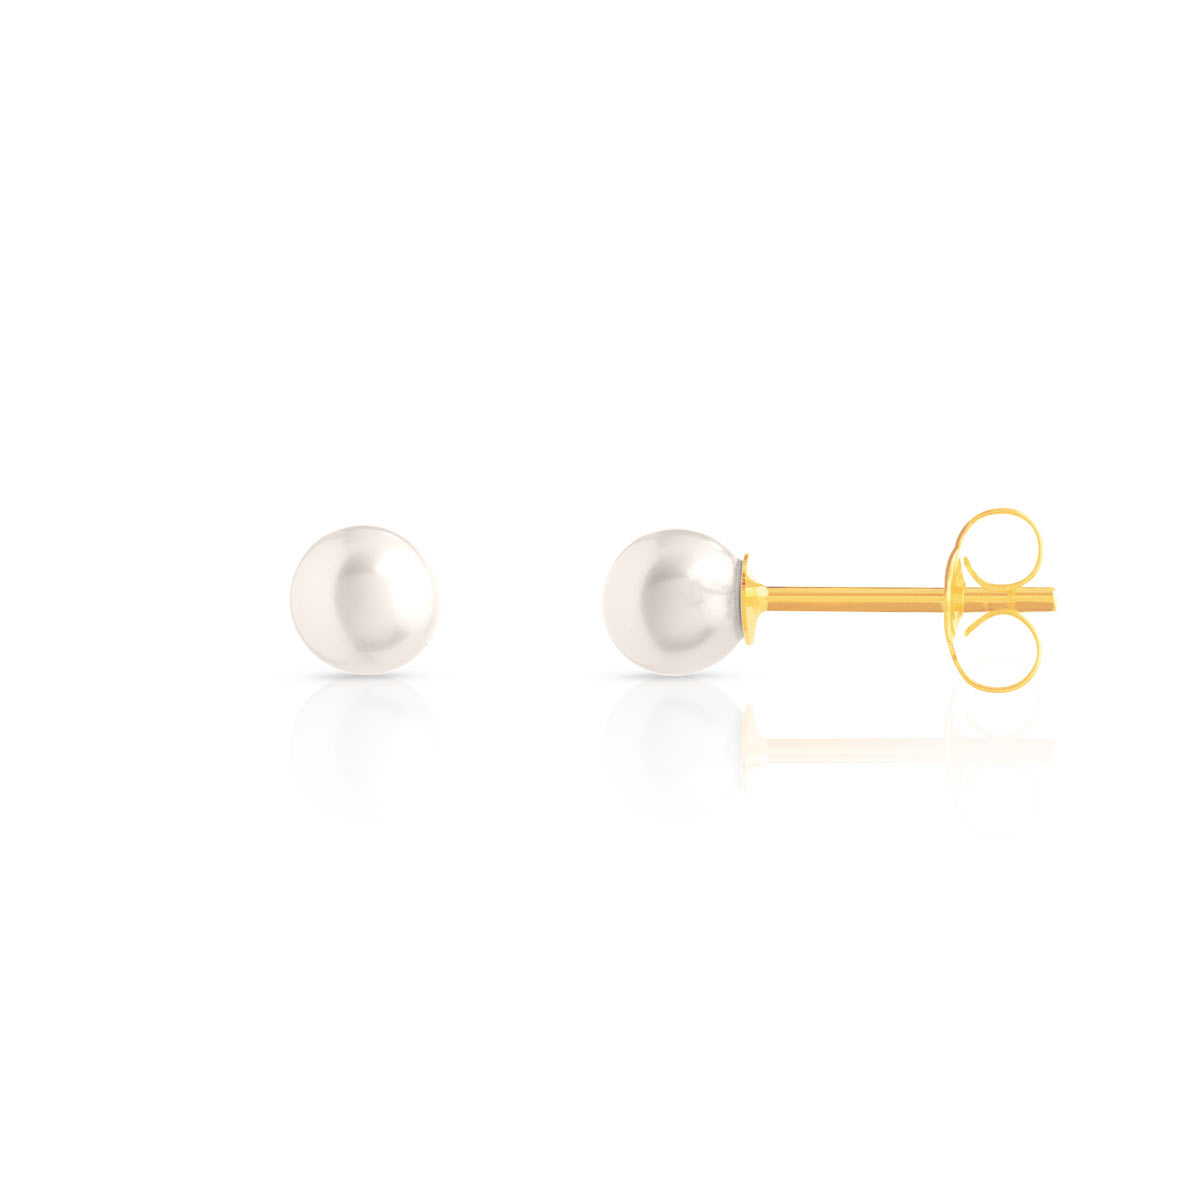 Boucles d'oreilles or 750 jaune perles de culture de Chine - vue D1